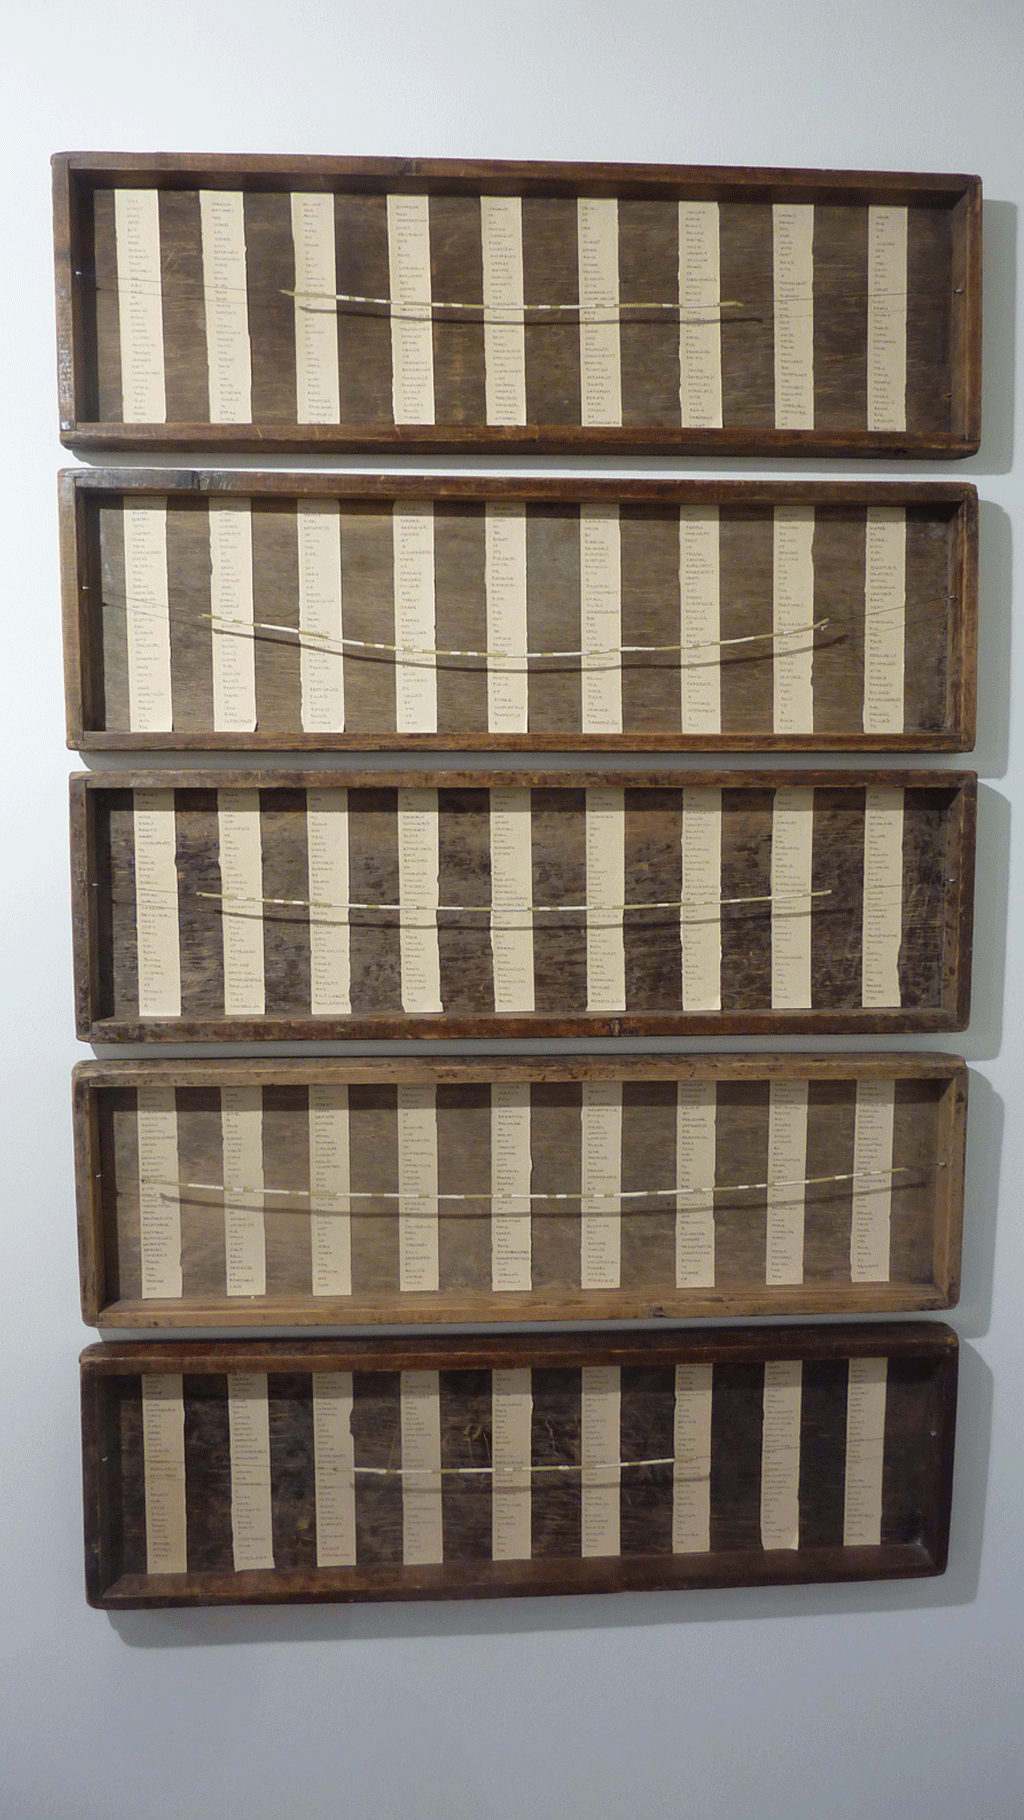 Inventory - Holz, Wachs, Faden, Schrauben, Acryl, Tusche, Papier - 1991 - 5-teilig, je 29,5 x 98 x 5 cm (nicht verfügbar)  